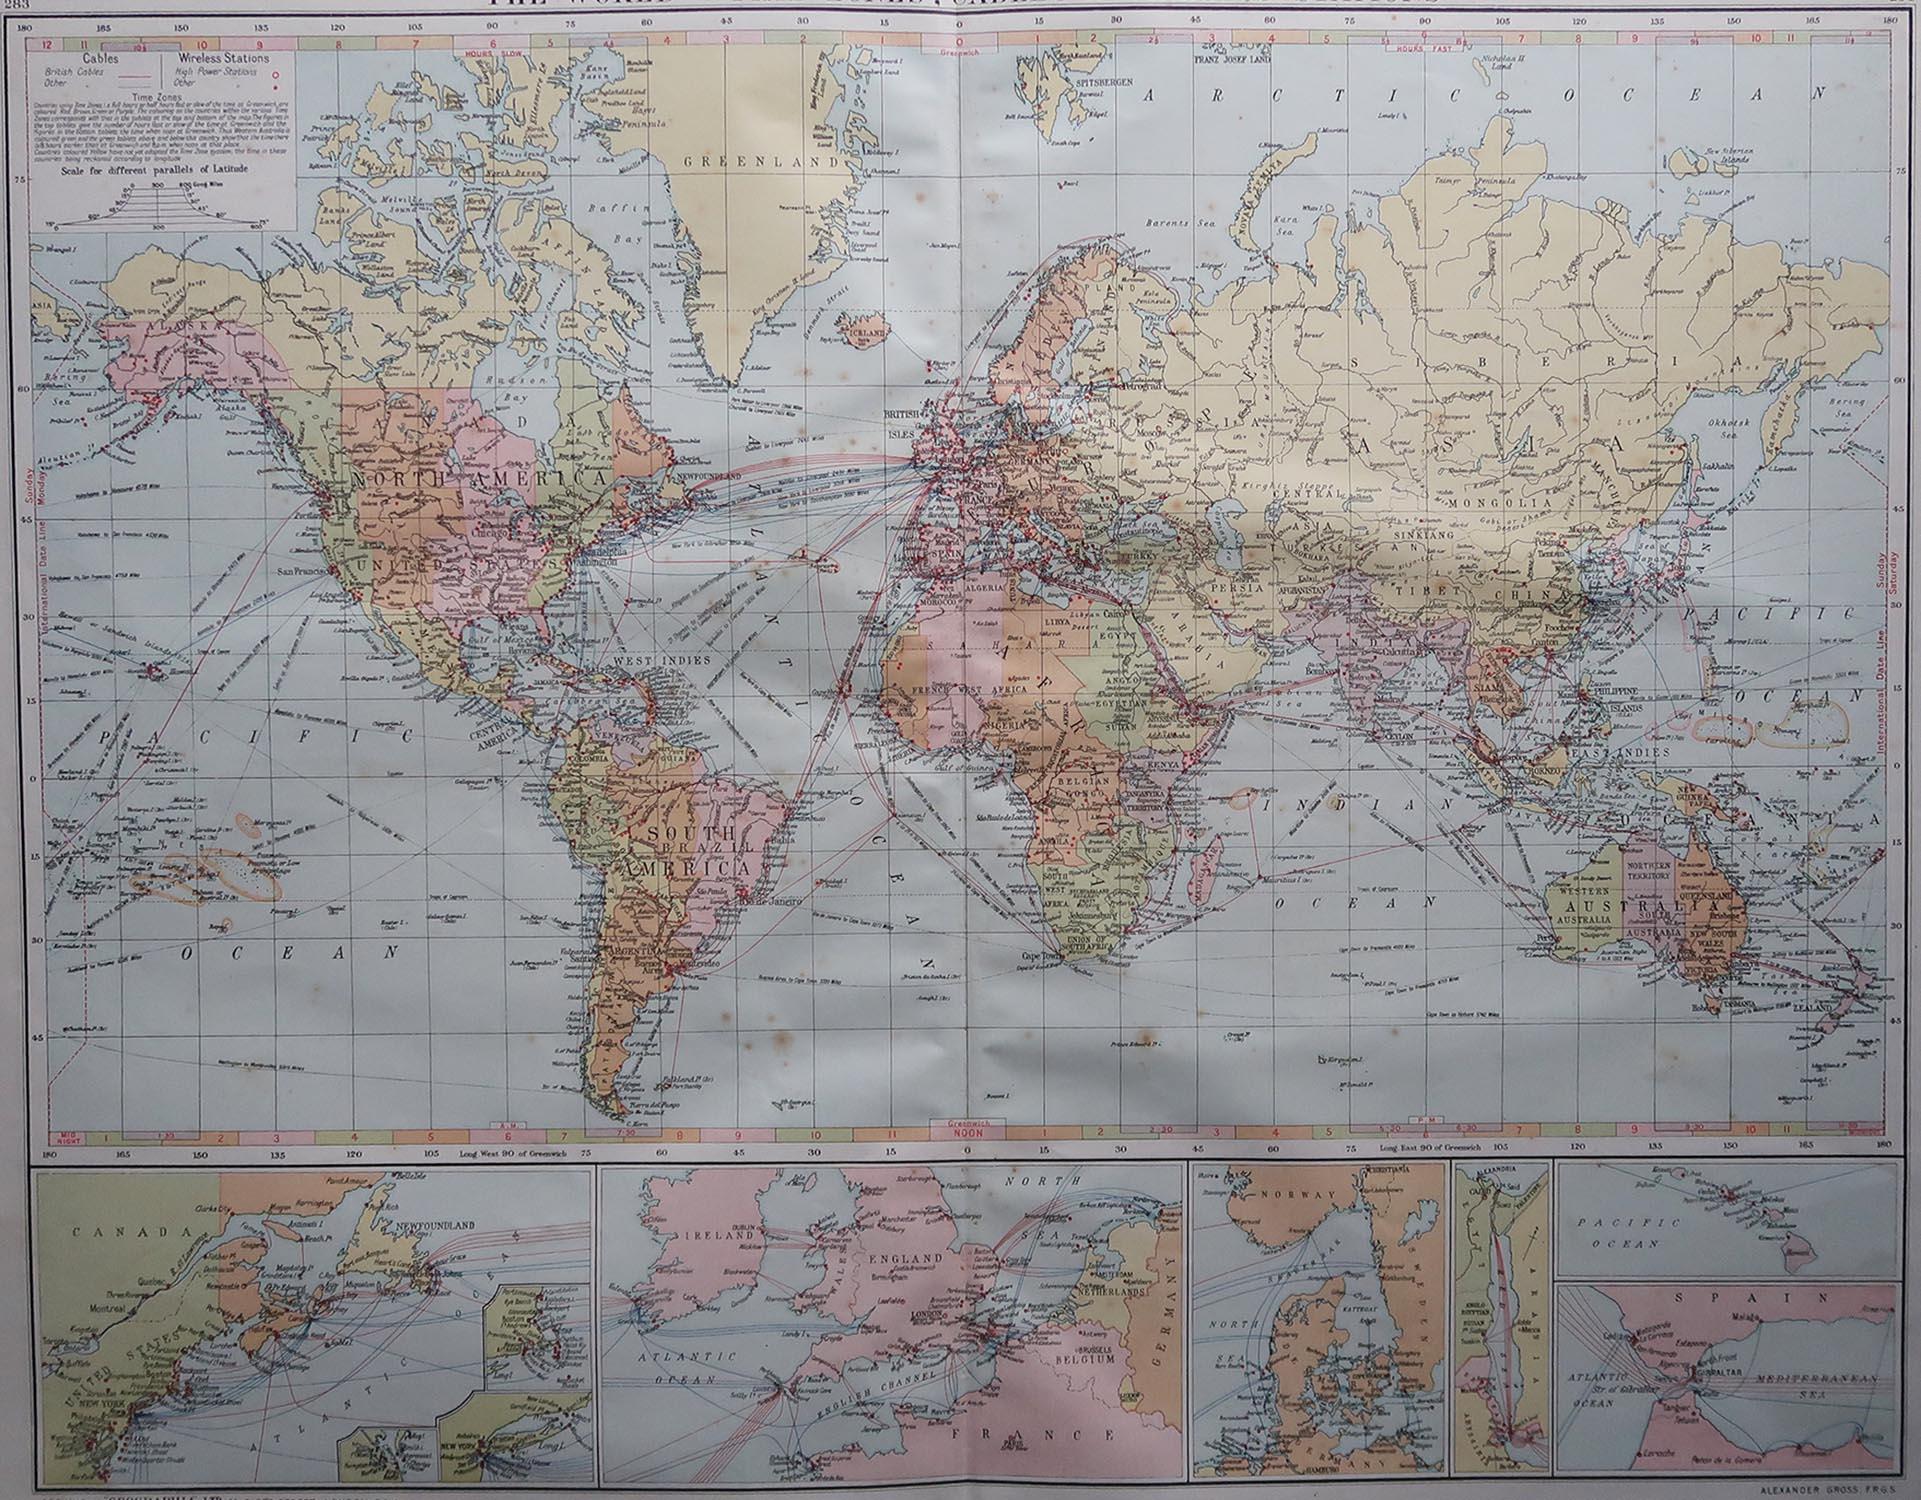 Große Karte der Welt

Originalfarbe.

Guter Zustand / leicht stockfleckig

Herausgegeben von Alexander Gross

Ungerahmt.








